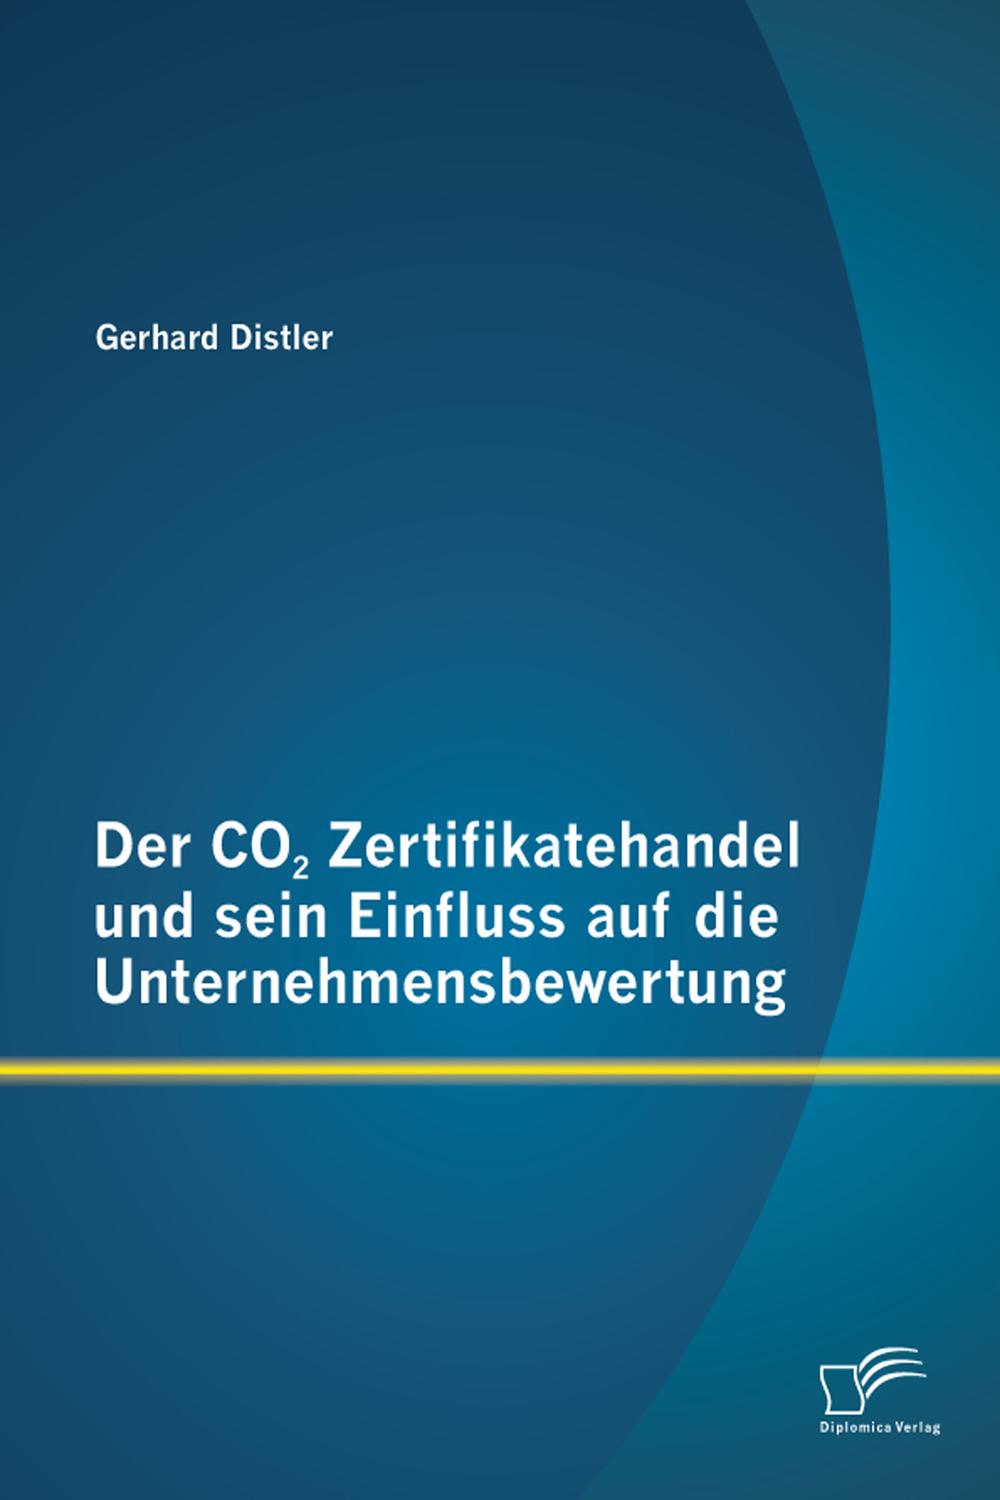 Der CO2 Zertifikatehandel und sein Einfluss auf die Unternehmensbewertung - Gerhard Distler